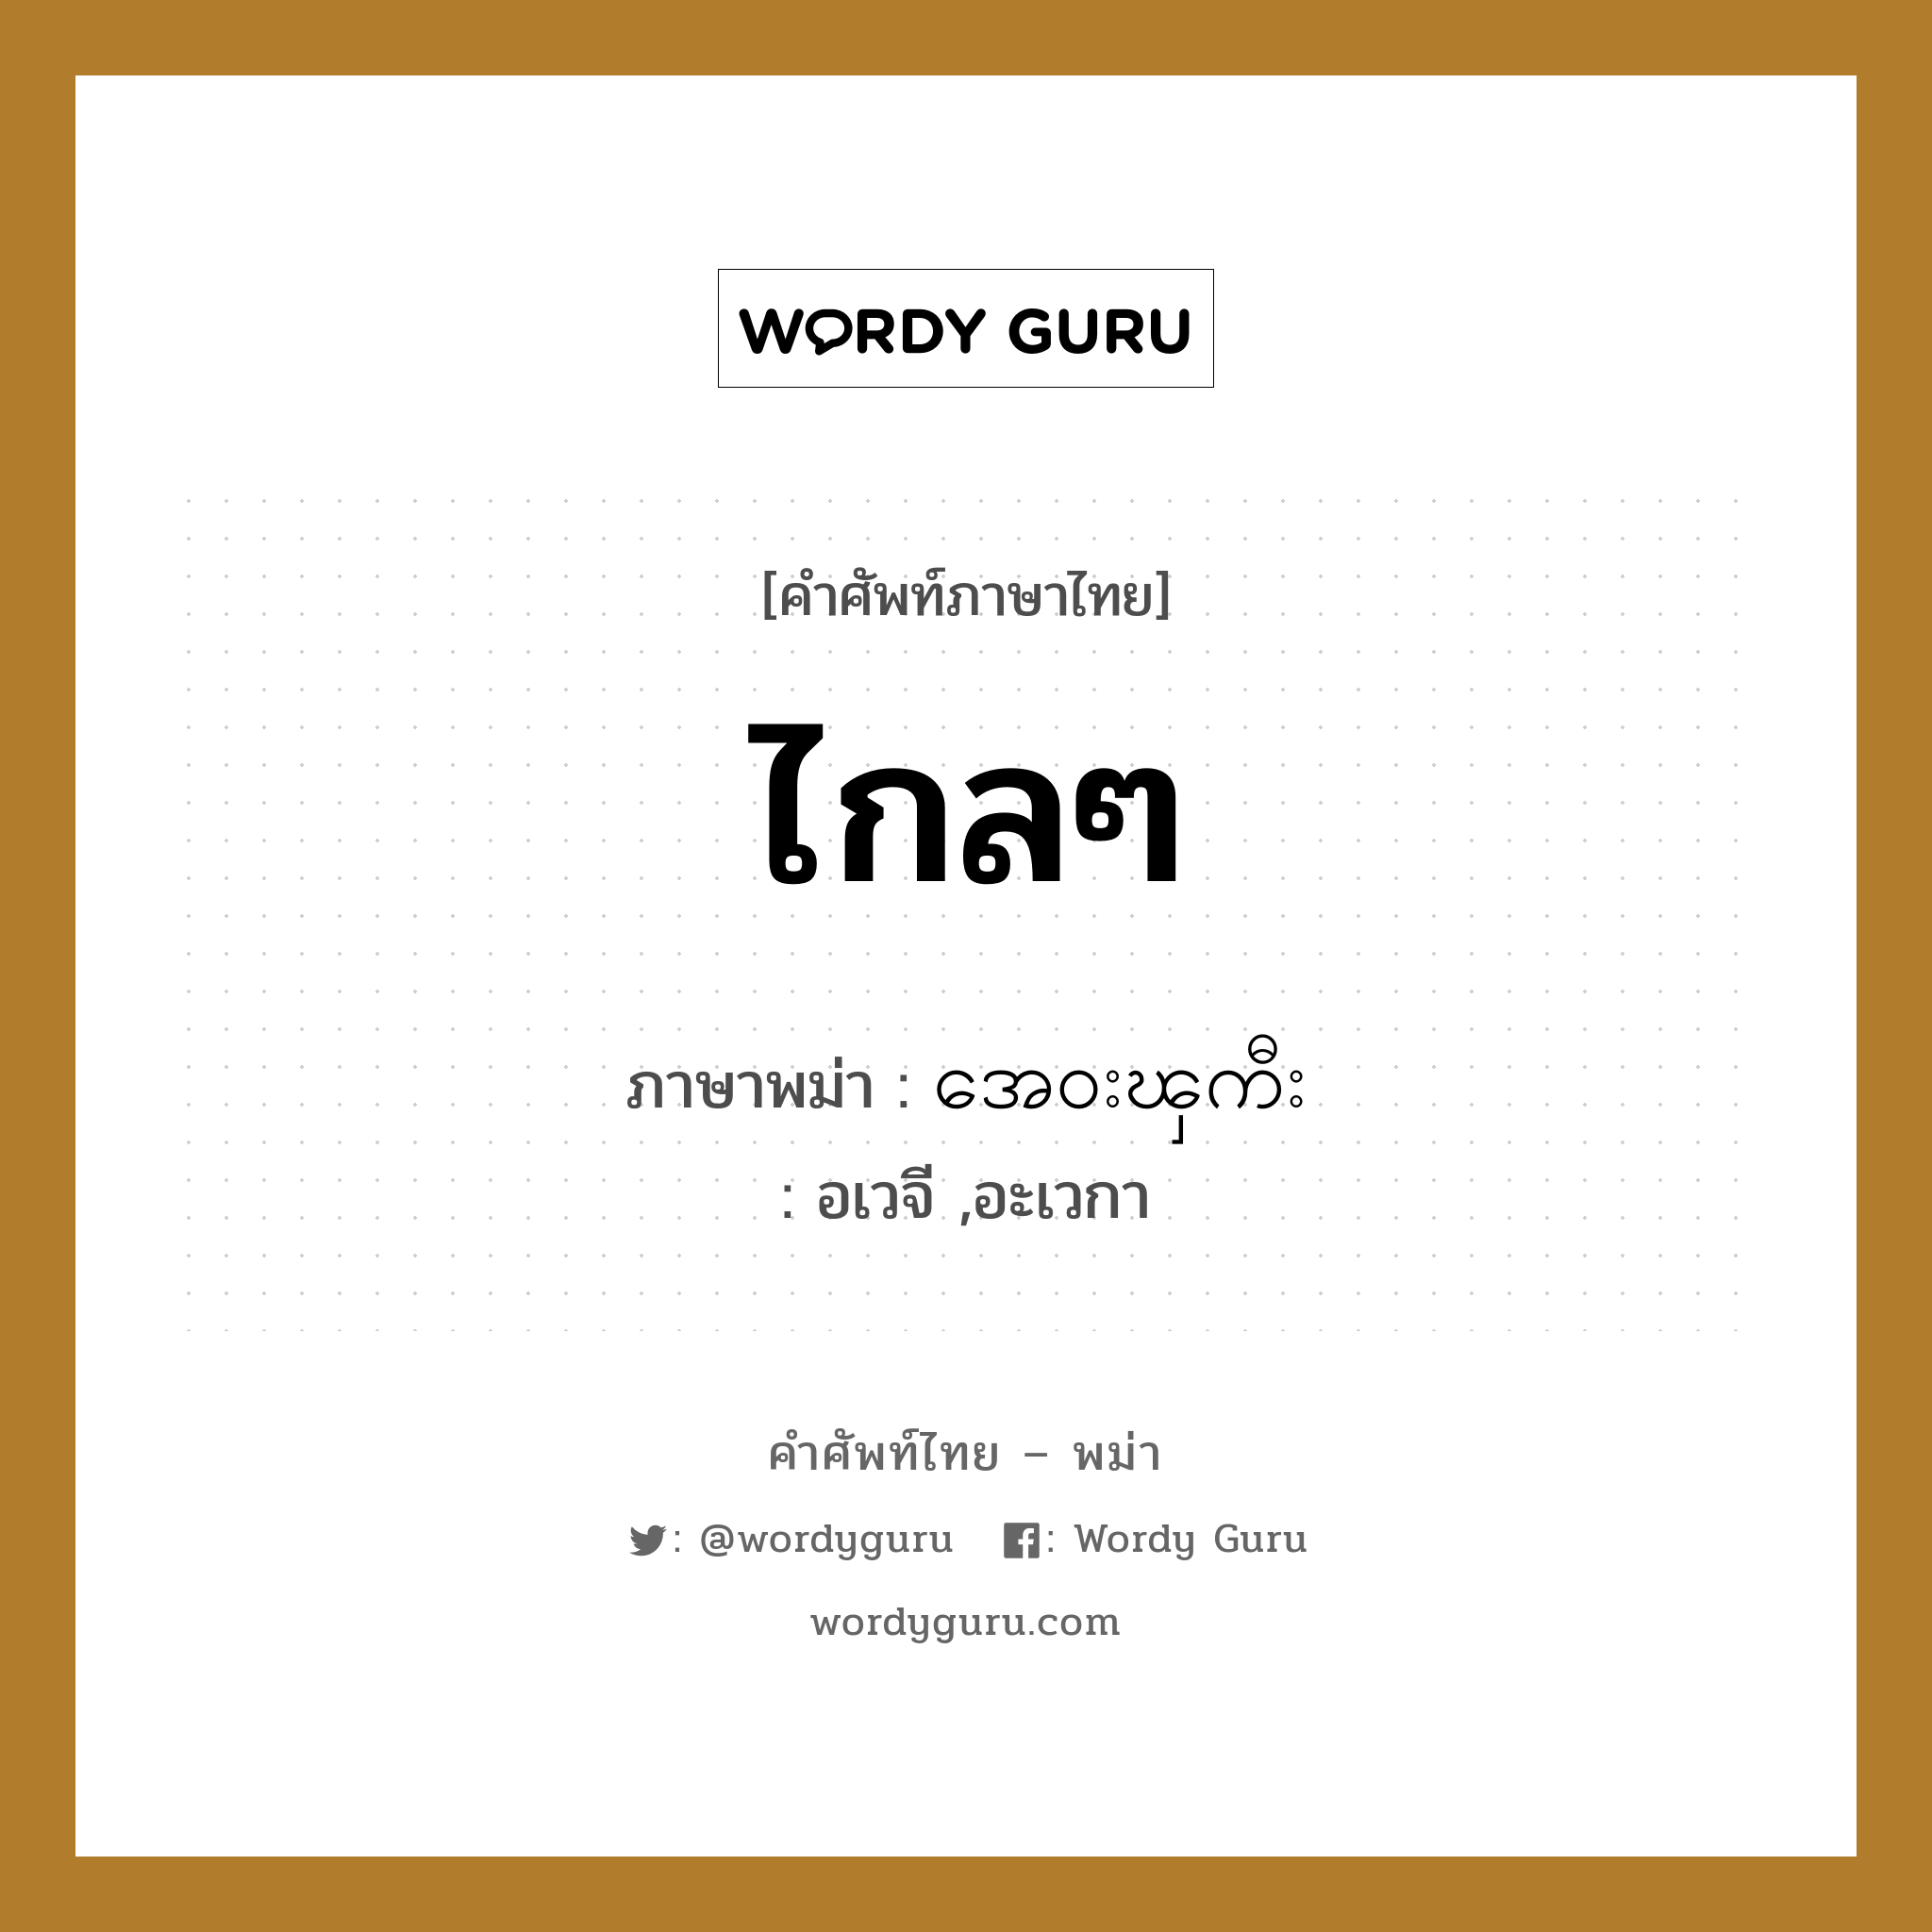 ไกลๆ ภาษาพม่าคืออะไร, คำศัพท์ภาษาไทย - พม่า ไกลๆ ภาษาพม่า အေ၀းၾကီး หมวด ทั่วไป อเวจี ,อะเวกา หมวด ทั่วไป